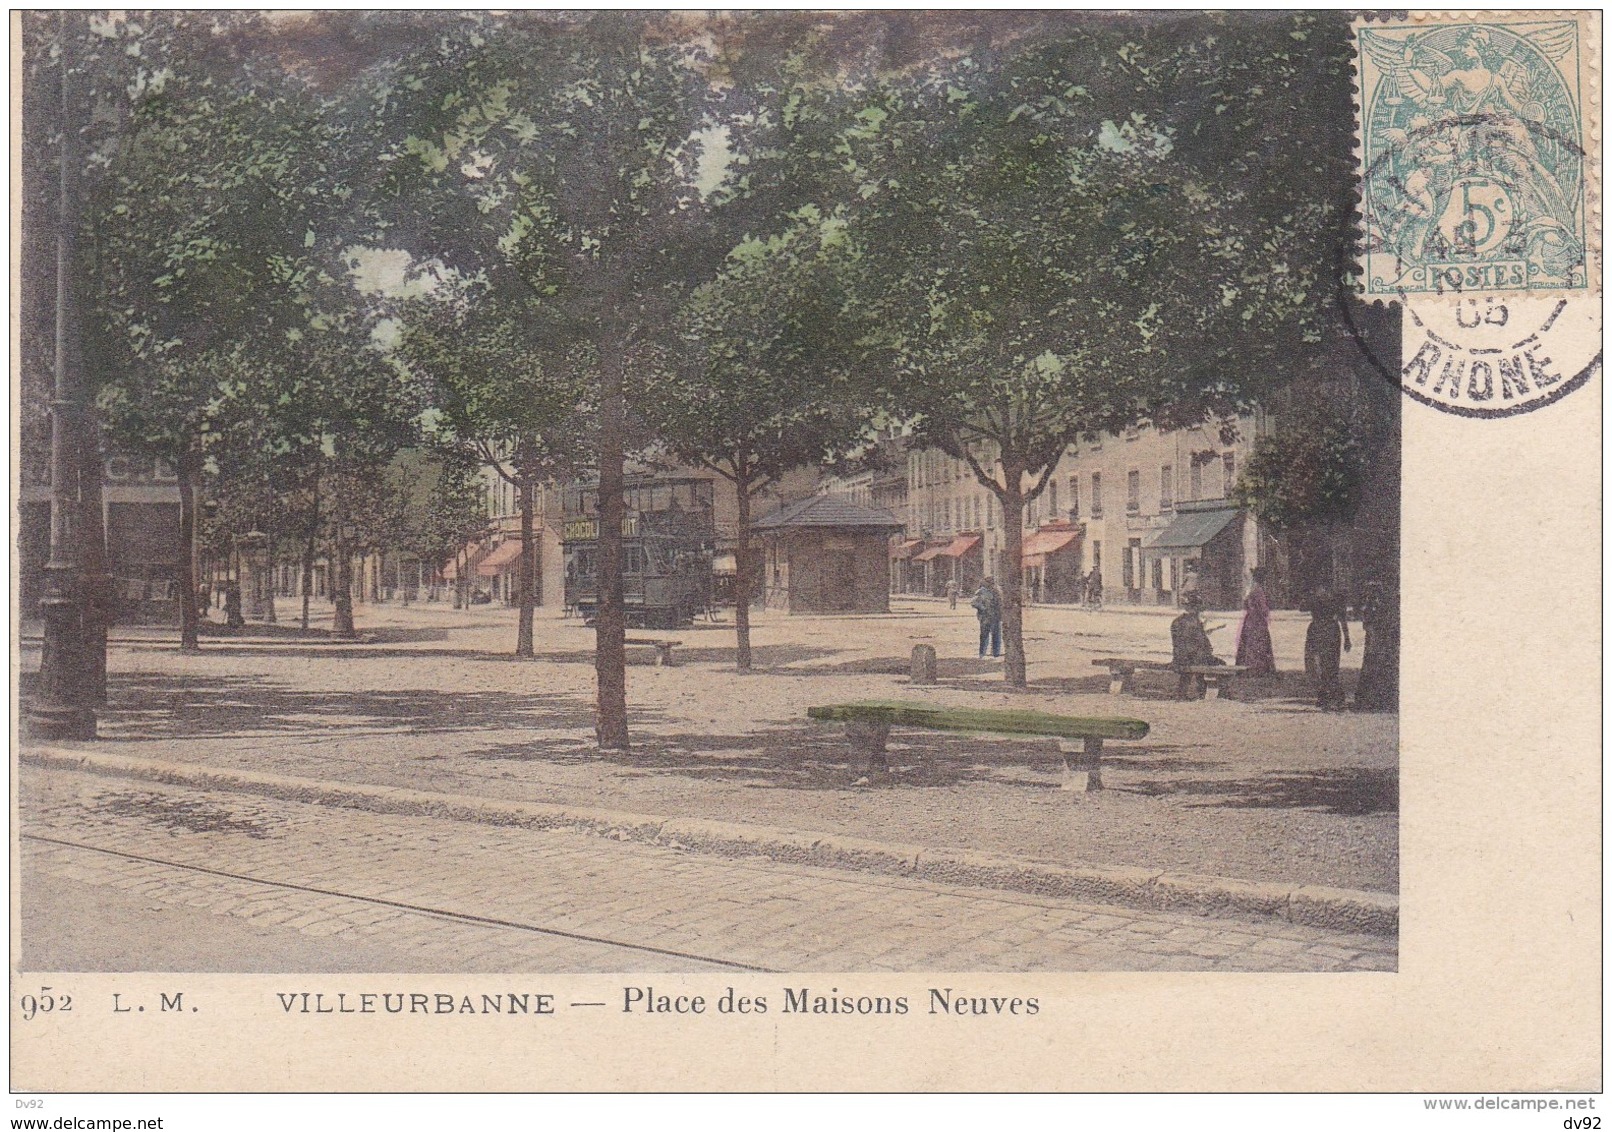 RHONE VILLEURBANNE PLACE DES MAISONS NEUVES TRAMWAY - Villeurbanne